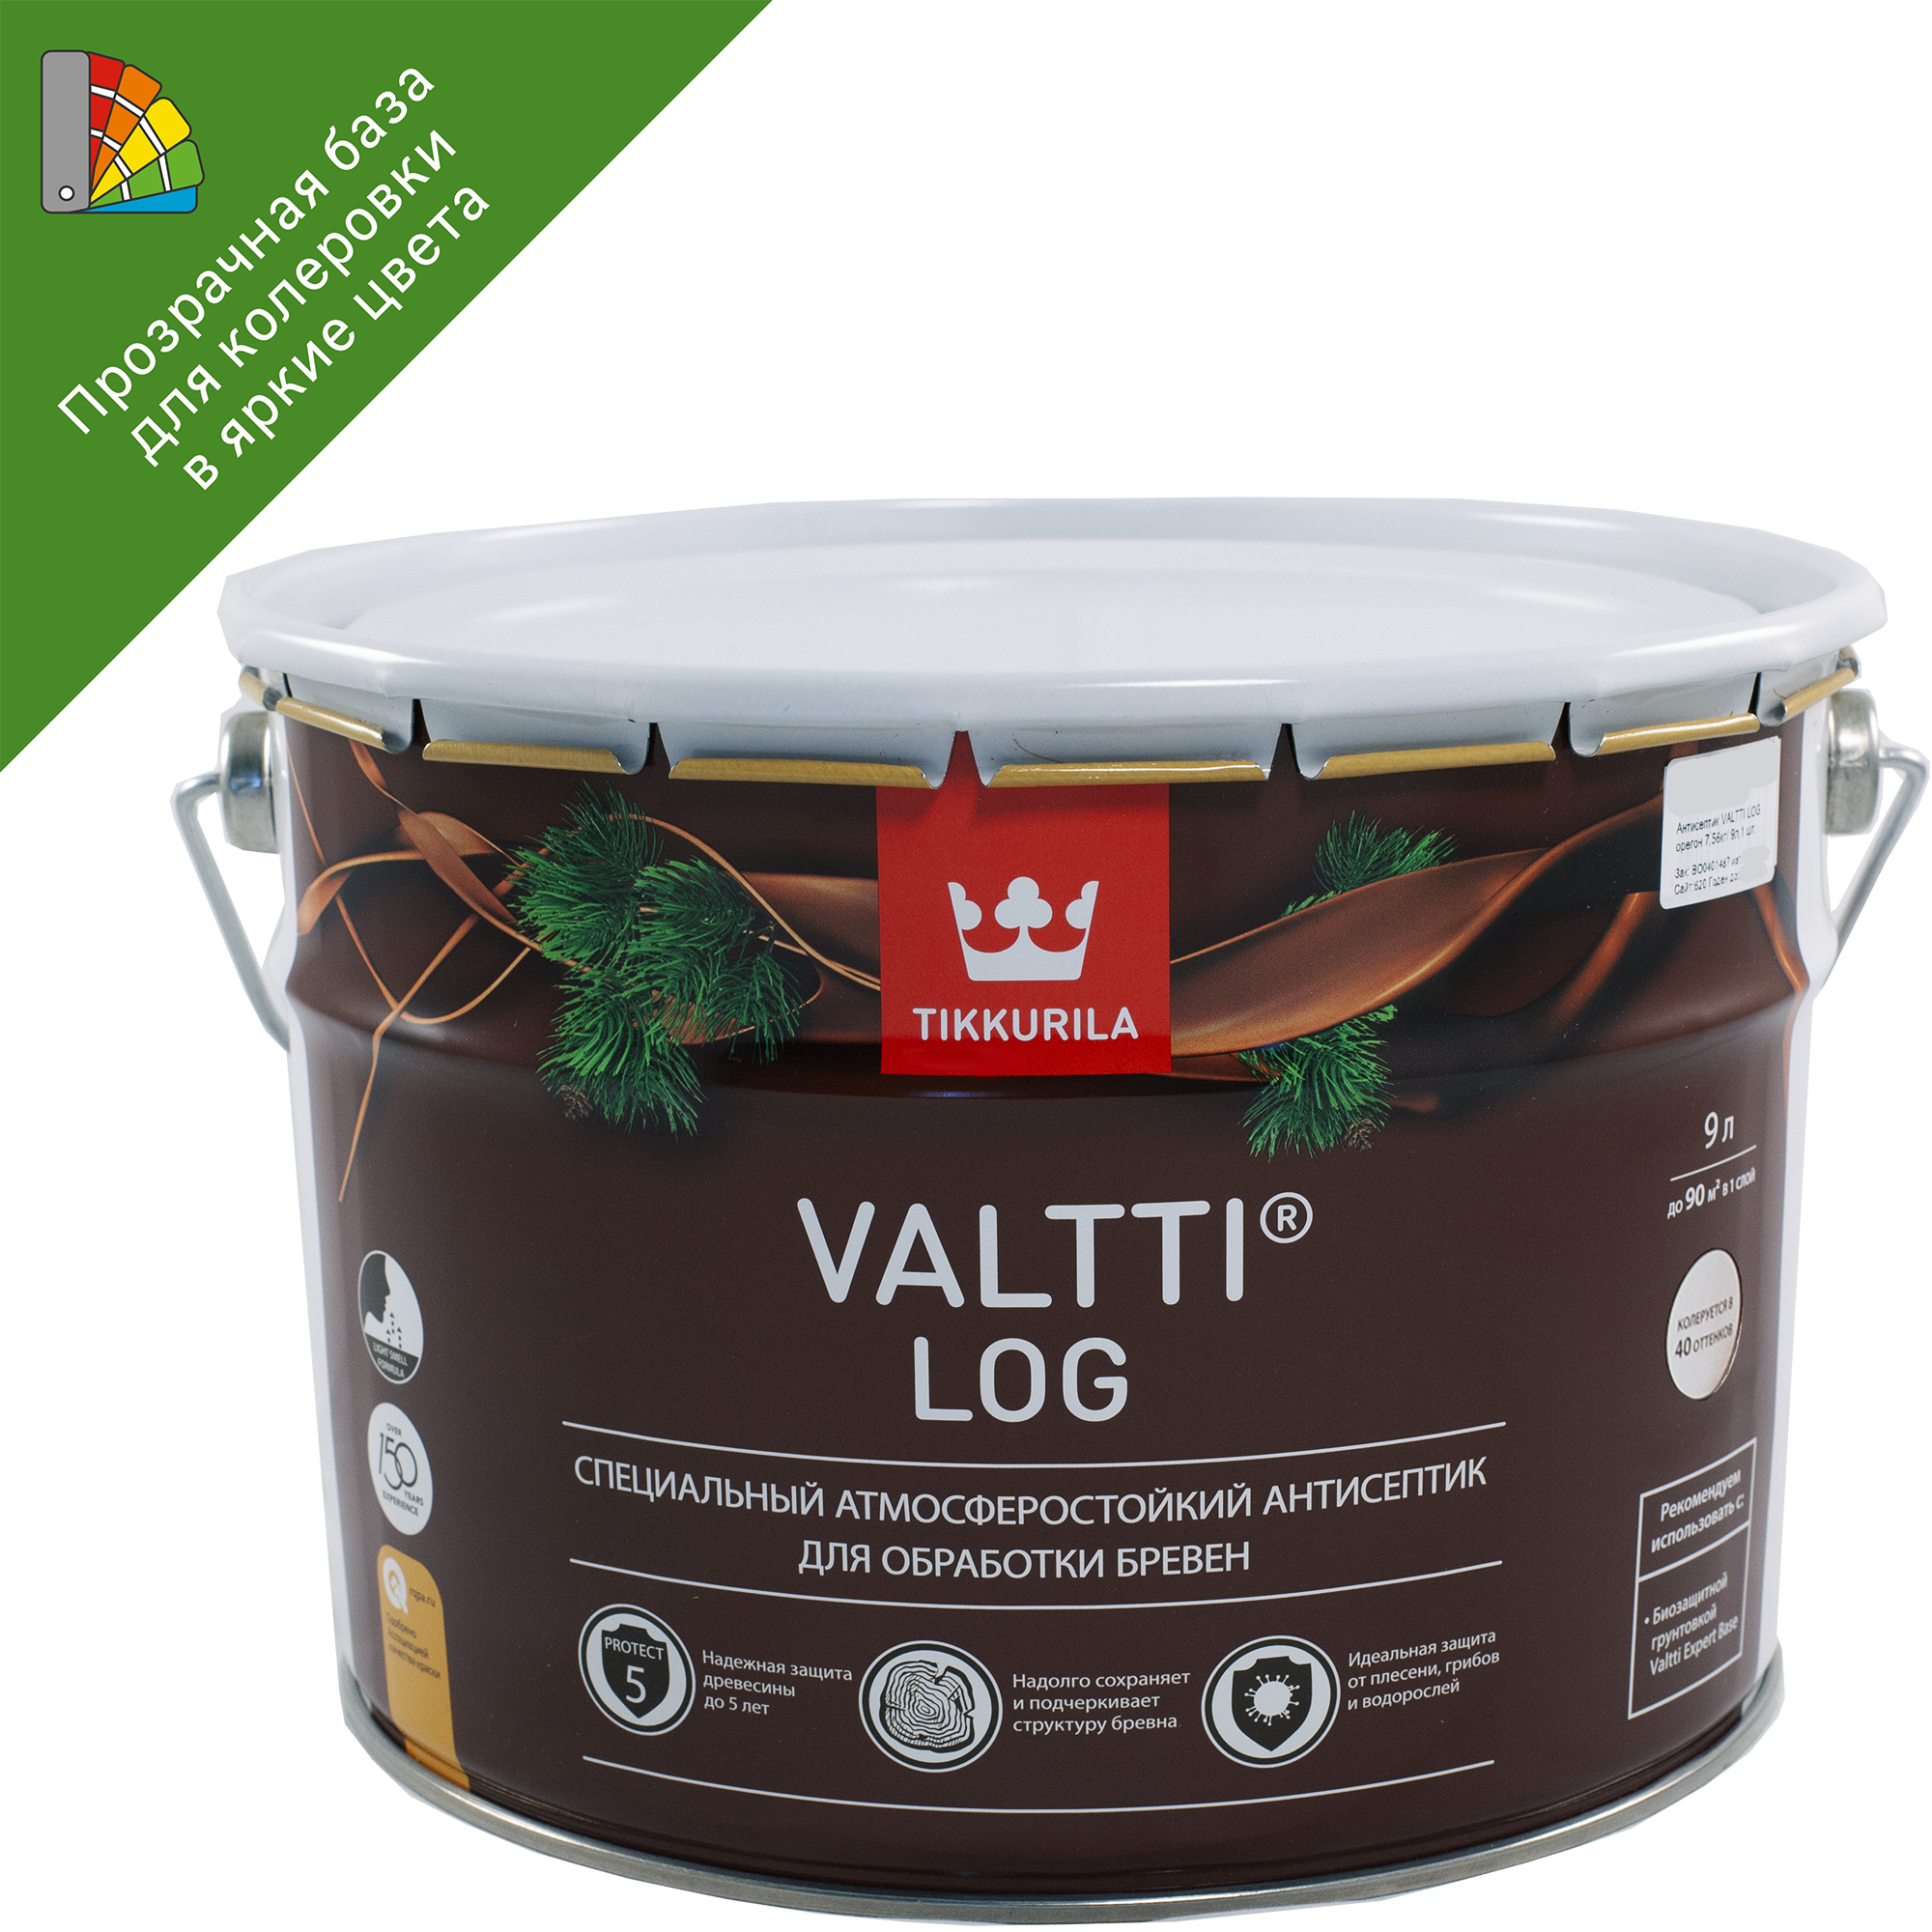 82115533 Антисептик для дерева Valtti Log база ЕС 9 л STLM-0019439 TIKKURILA